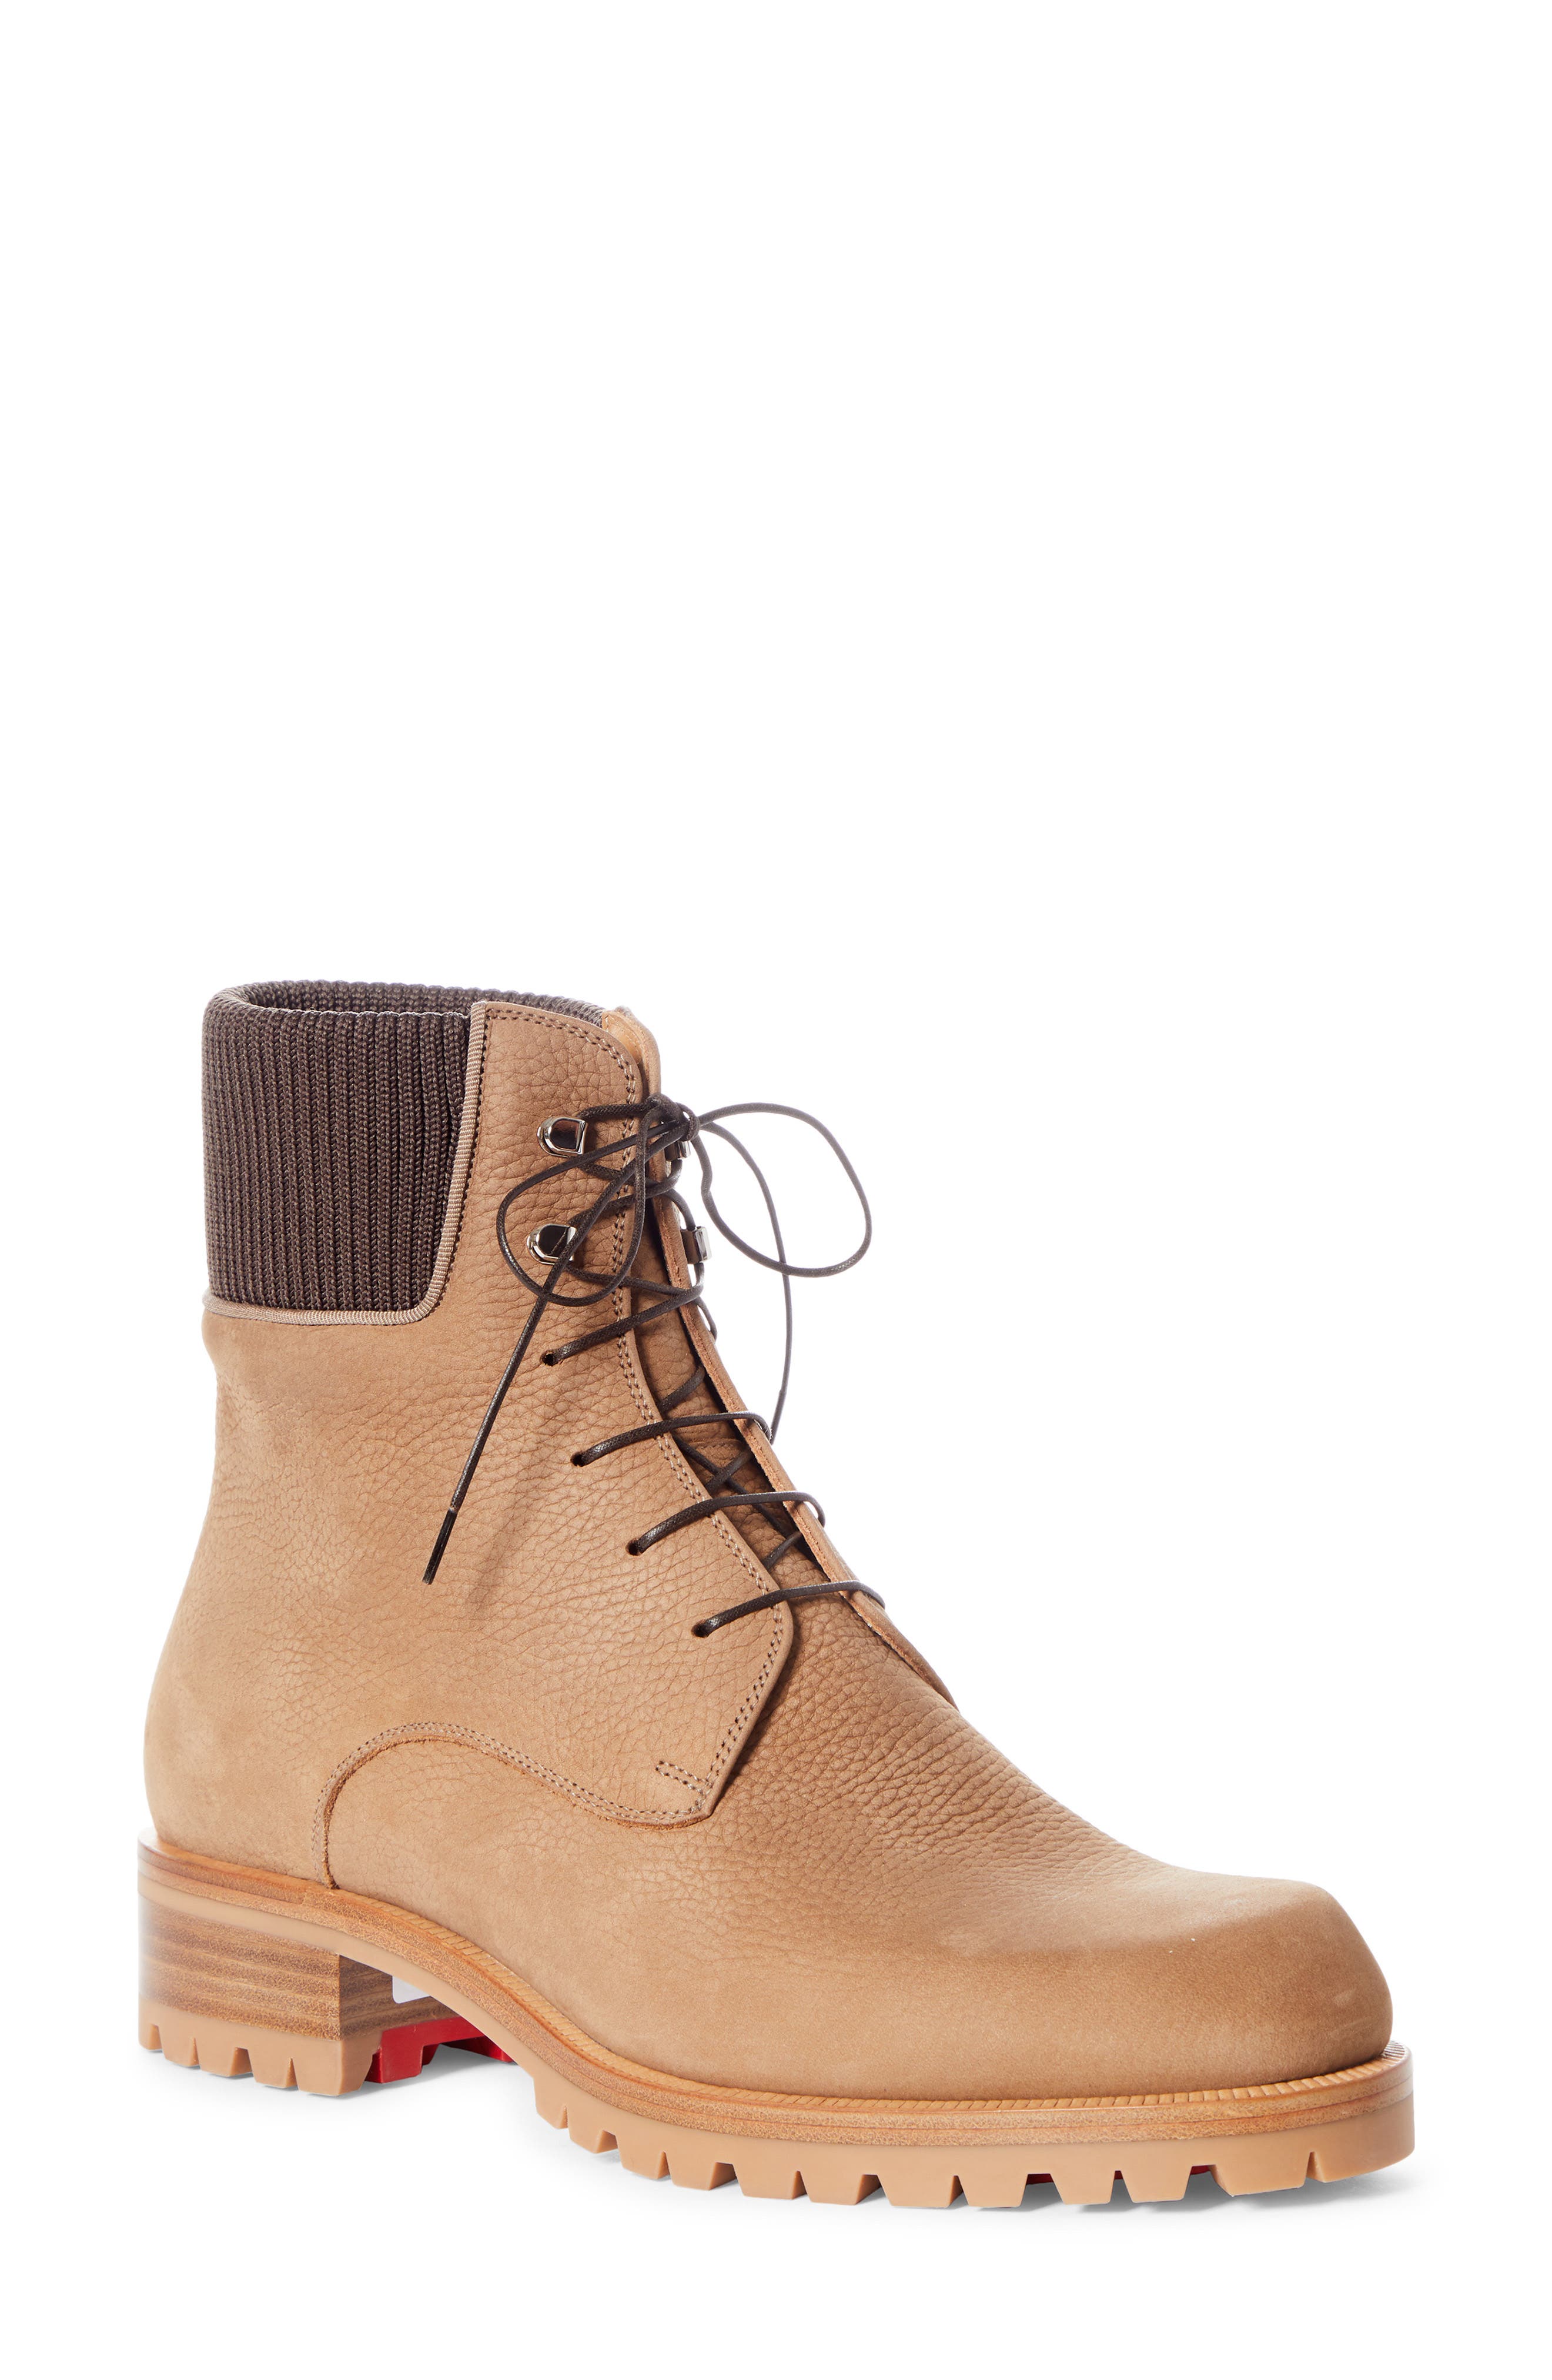 louboutin timberland boots